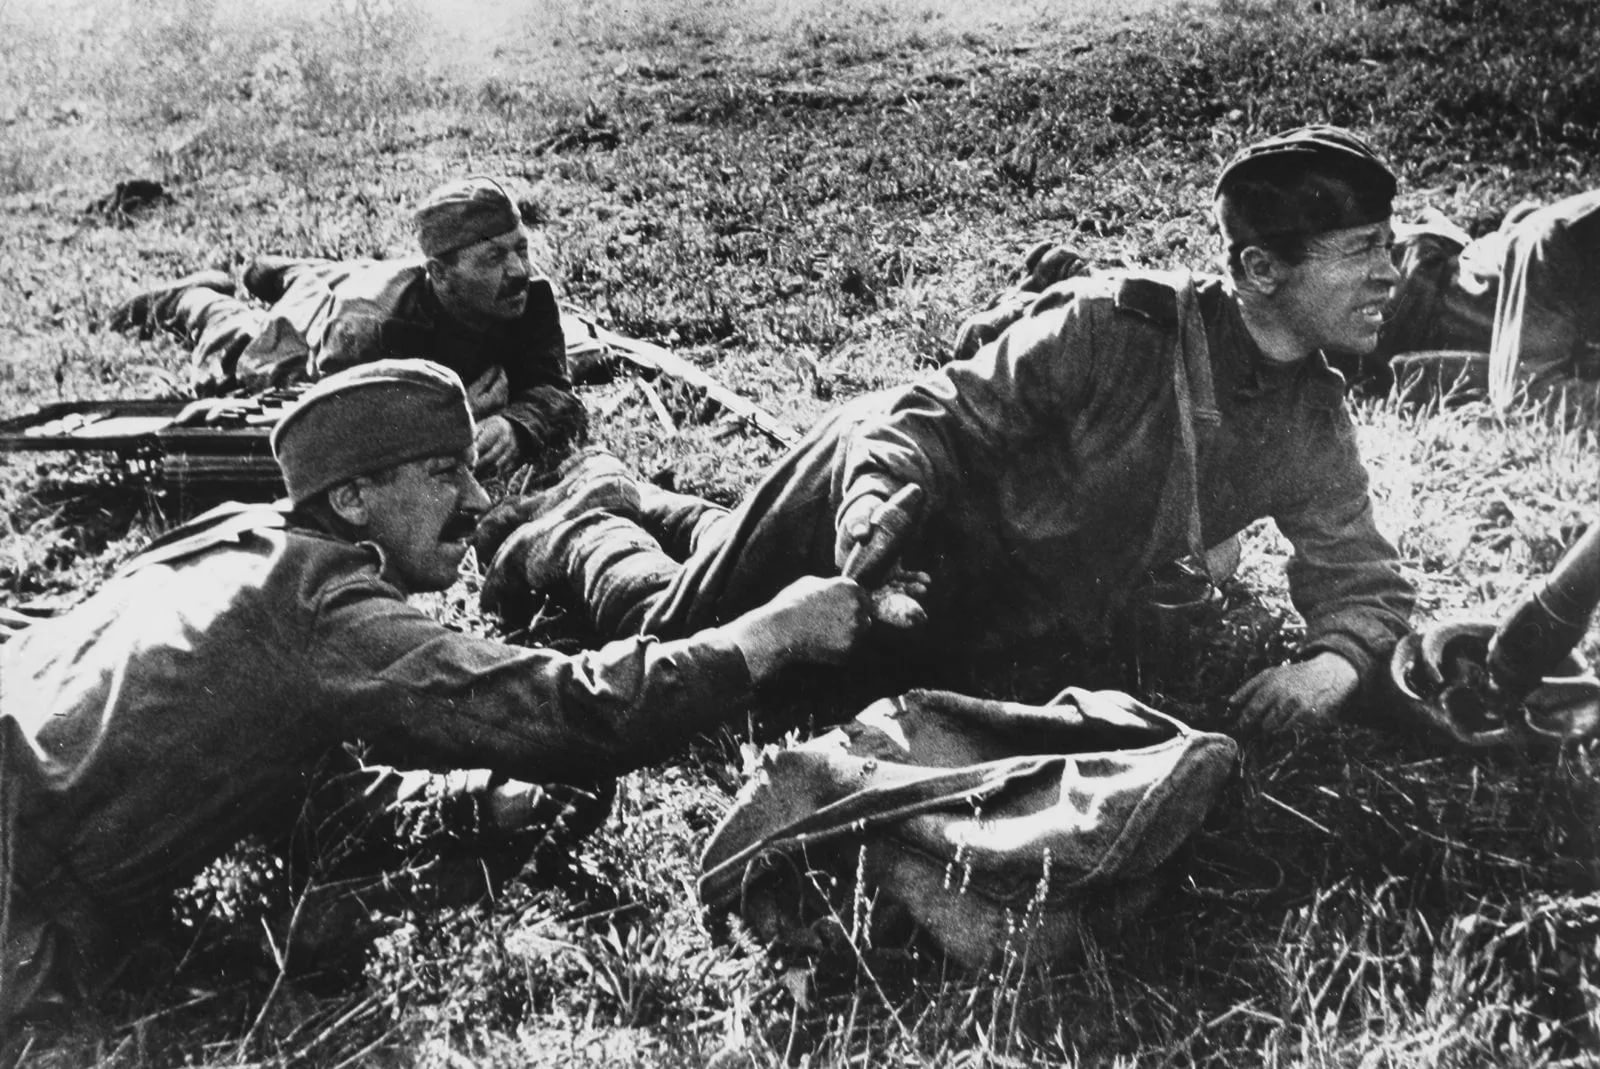 фотографии солдат великой отечественной войны 1941 1945